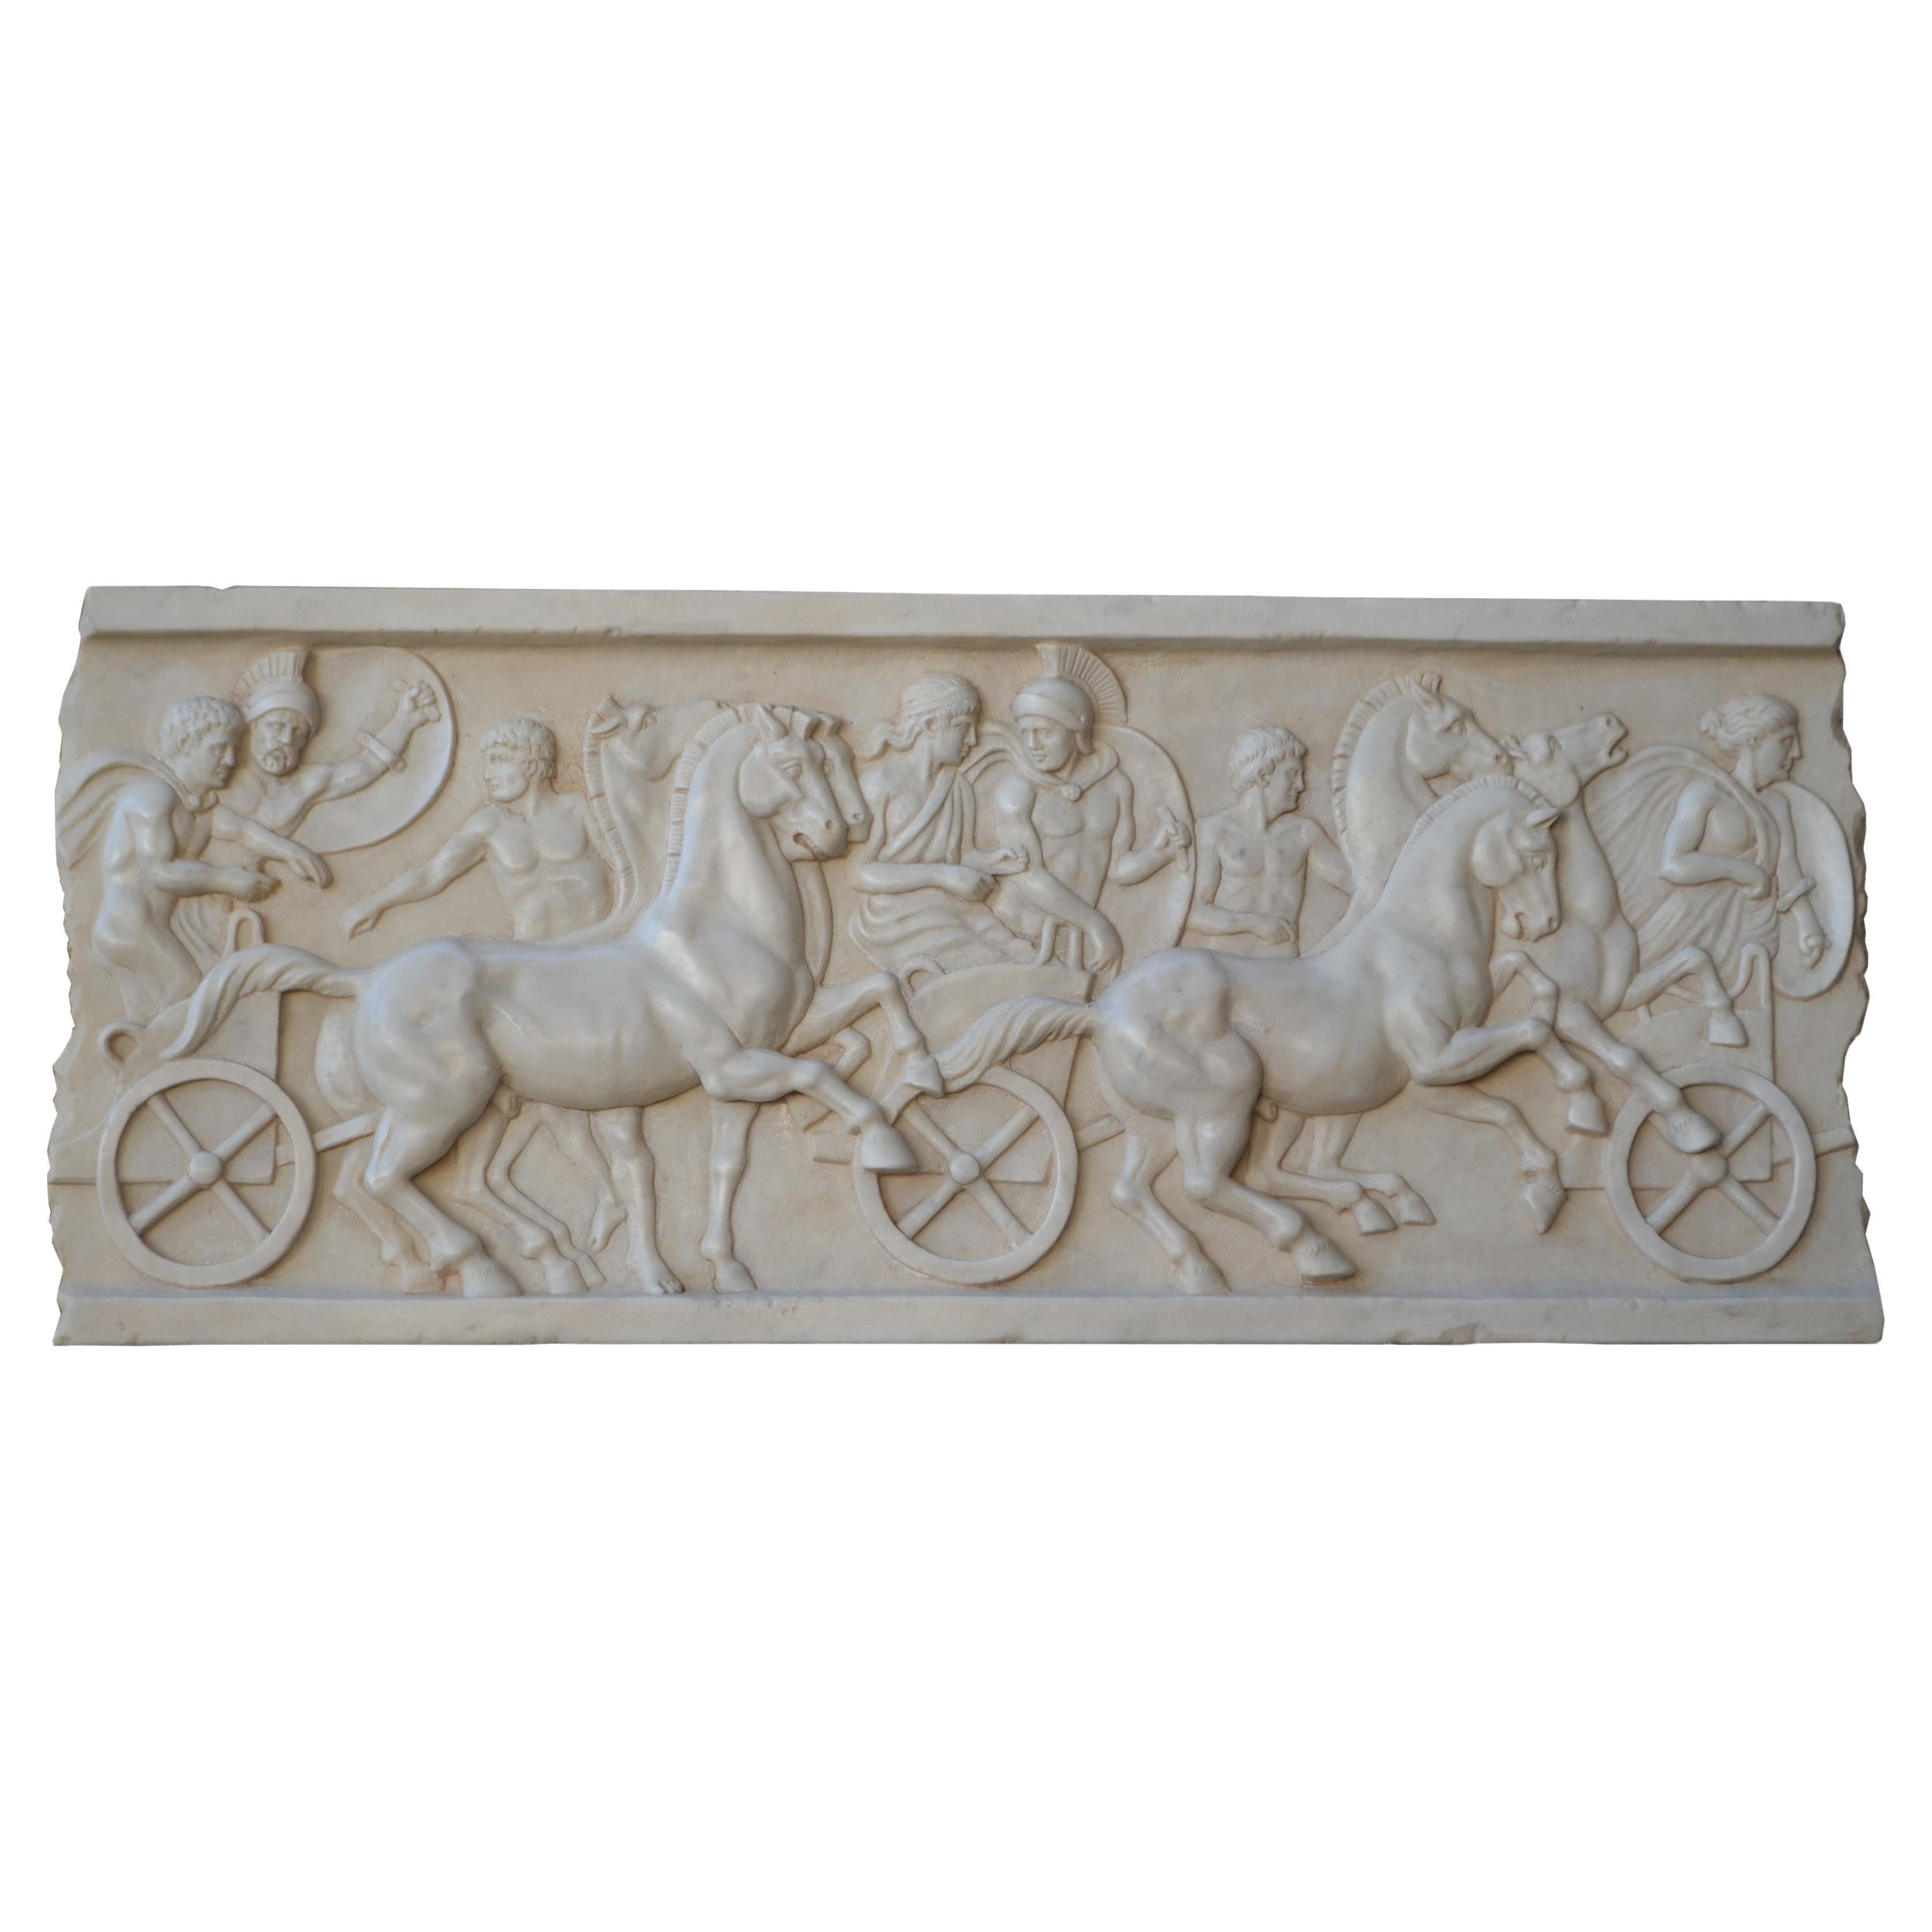 Altorilievo con scène di cavalli e bighe romane scolpito en marmo bianco Carrara en vente